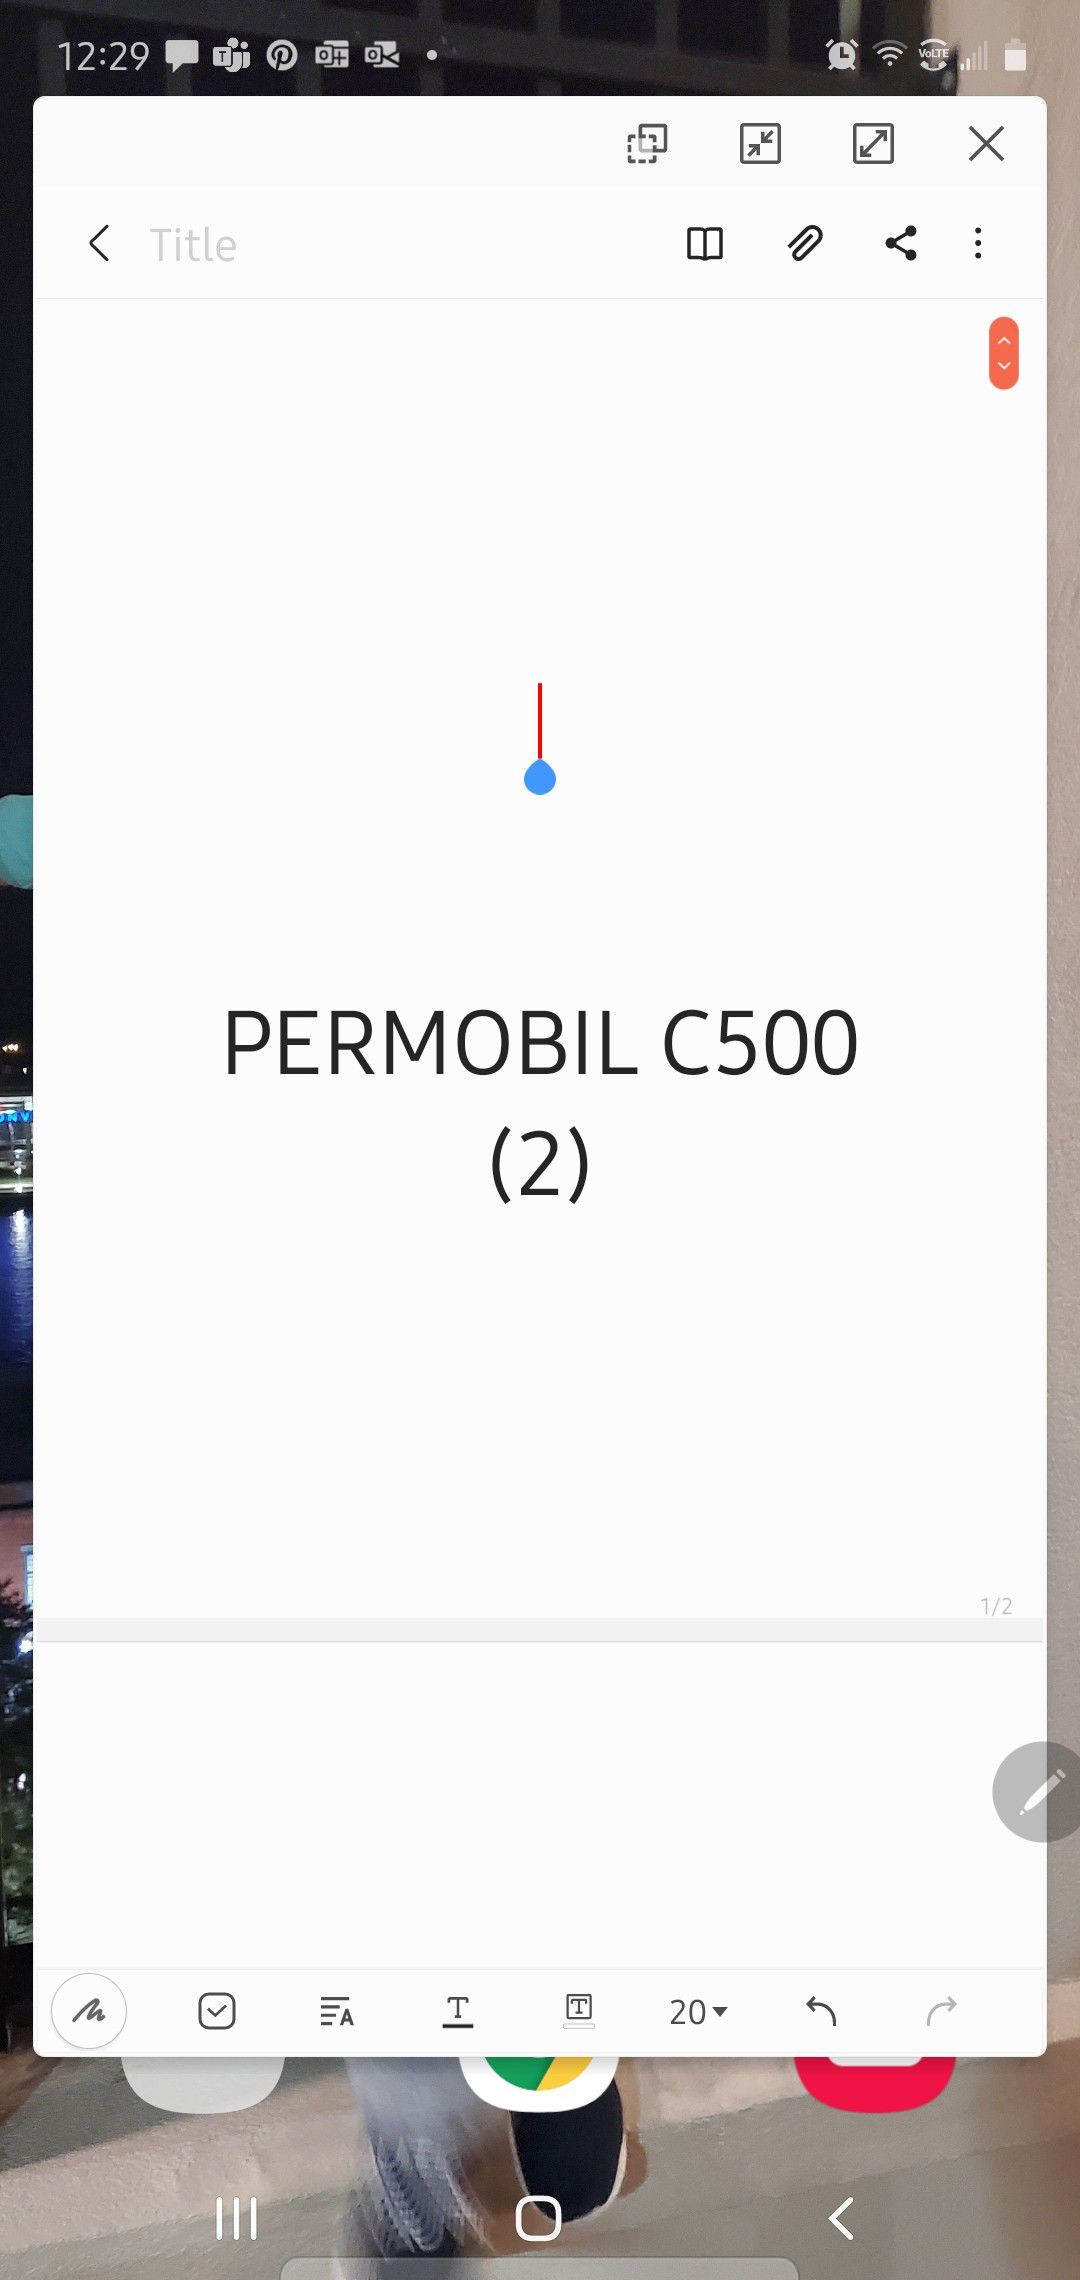 Permobil C500 (2)